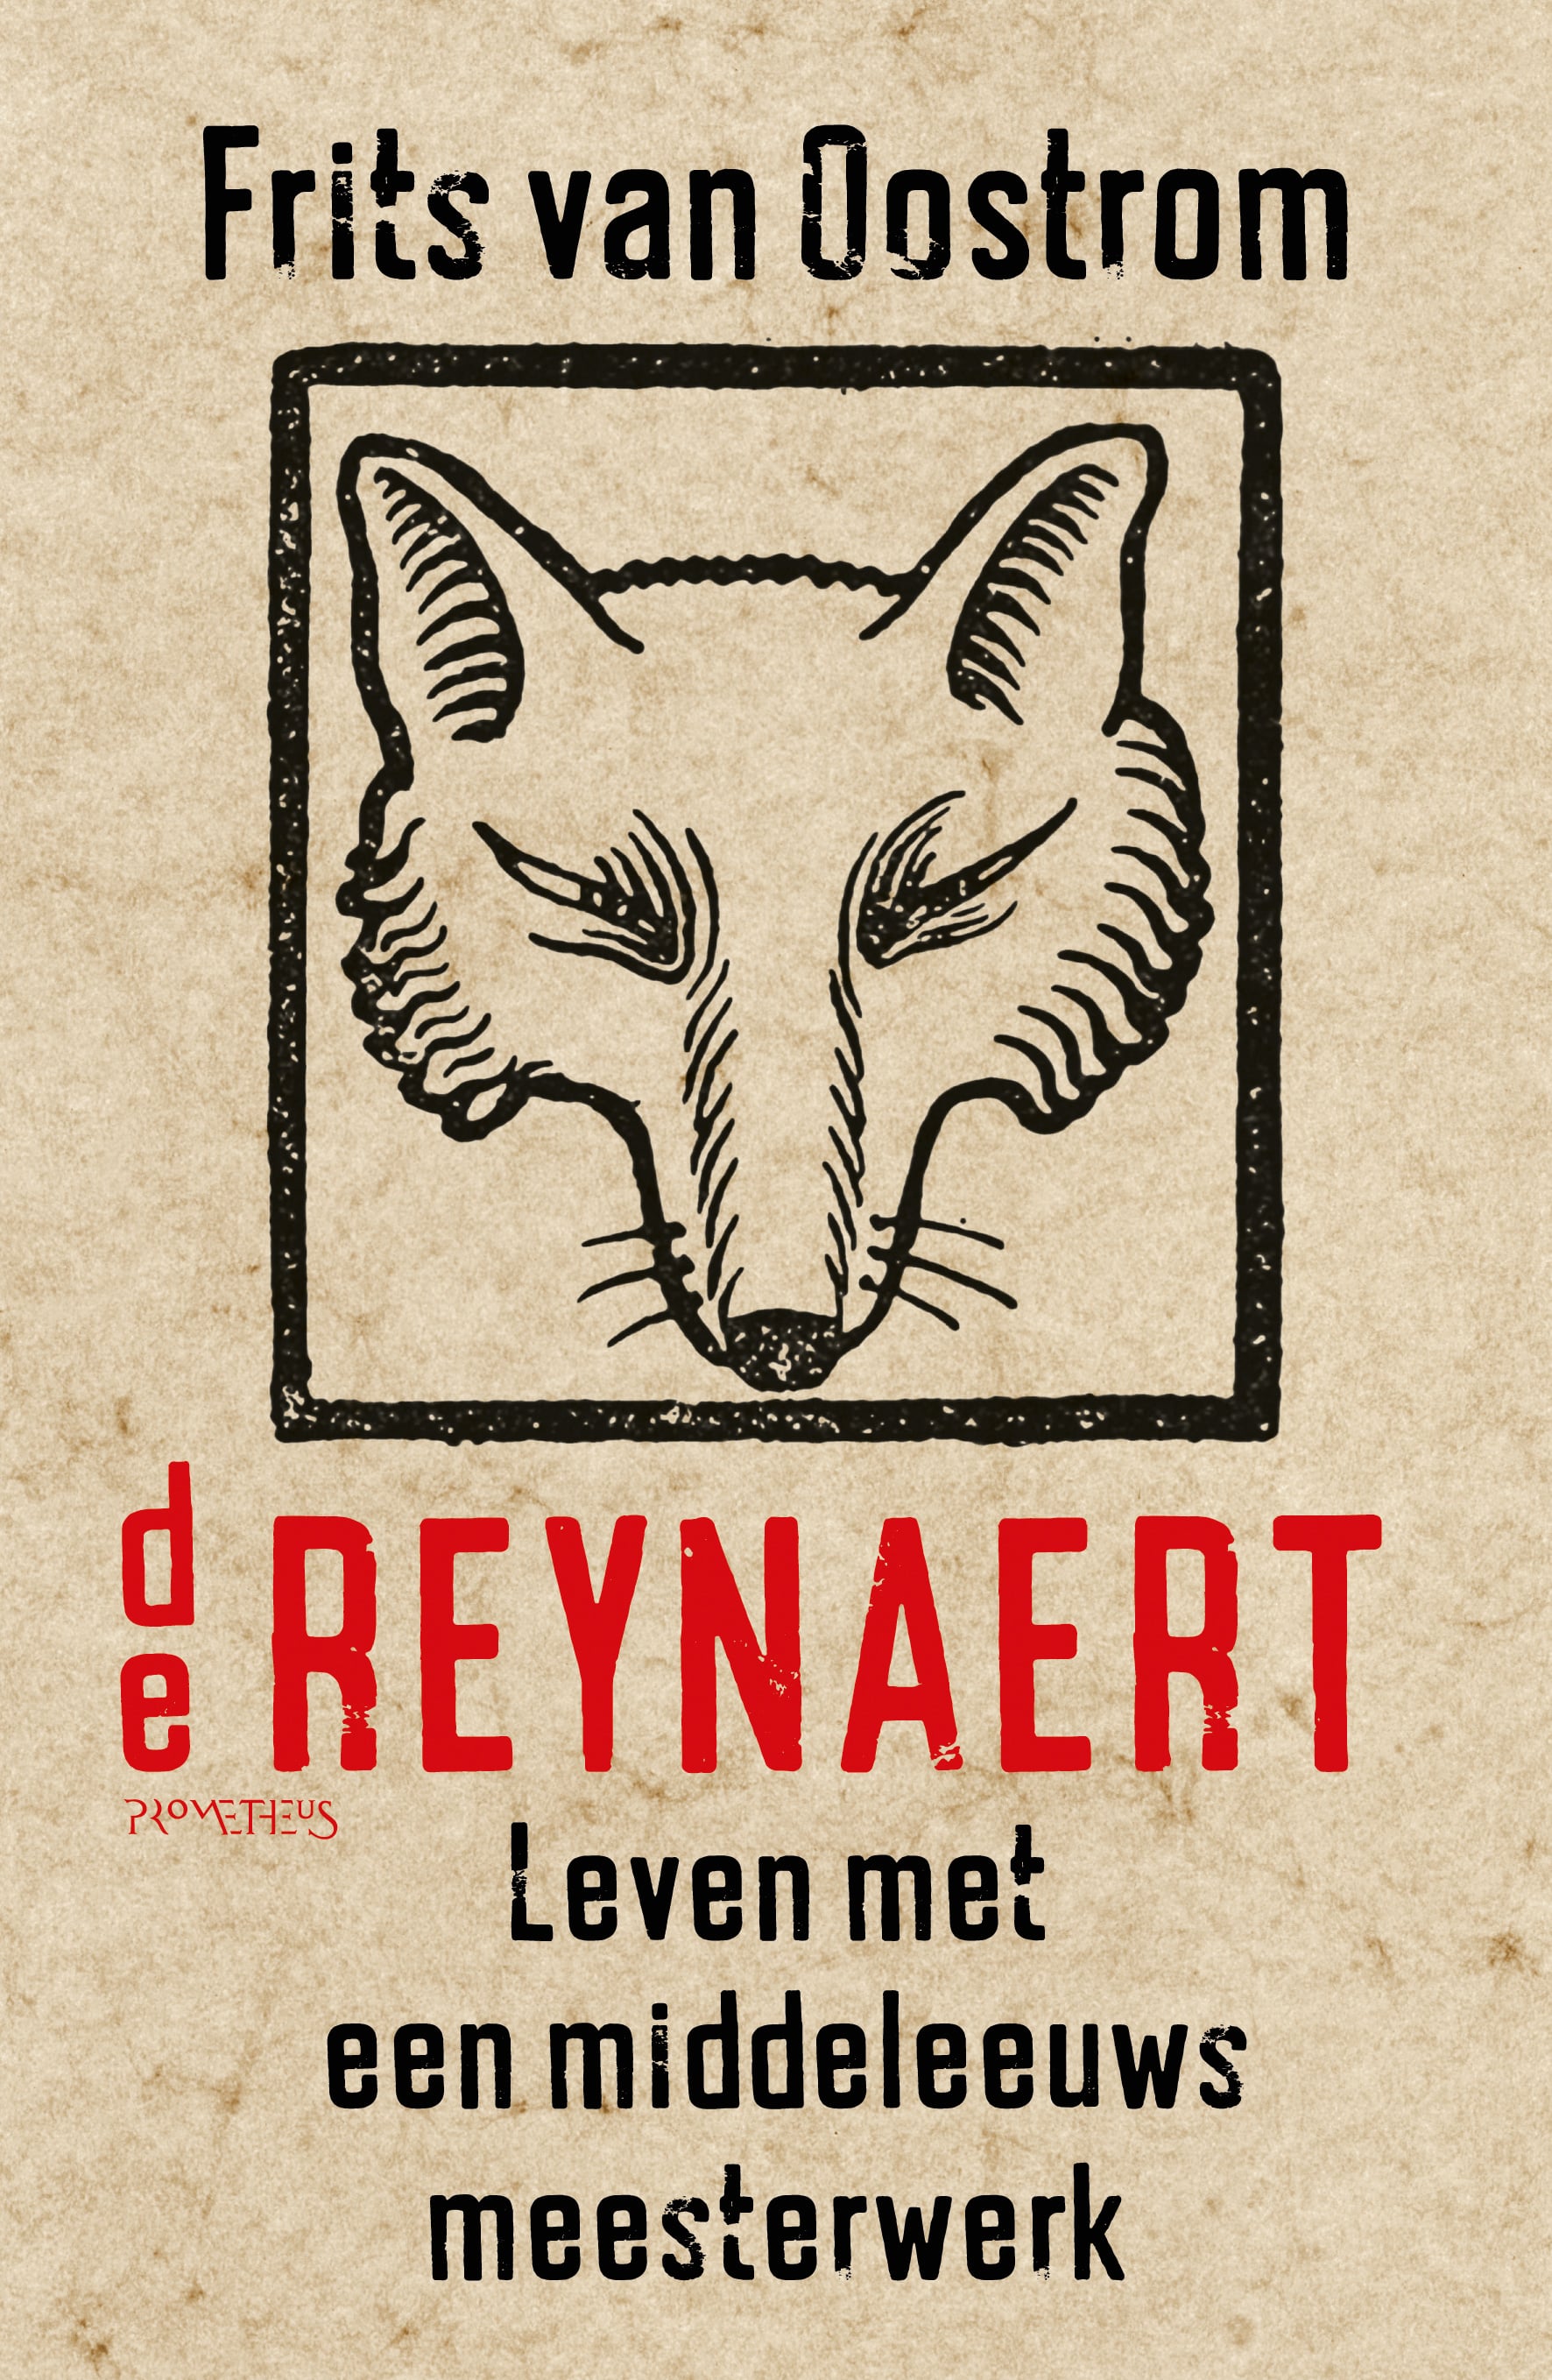 Frits van Oostrom presenteert ‘De Reynaert’ bij afscheid van Universiteit Utrecht